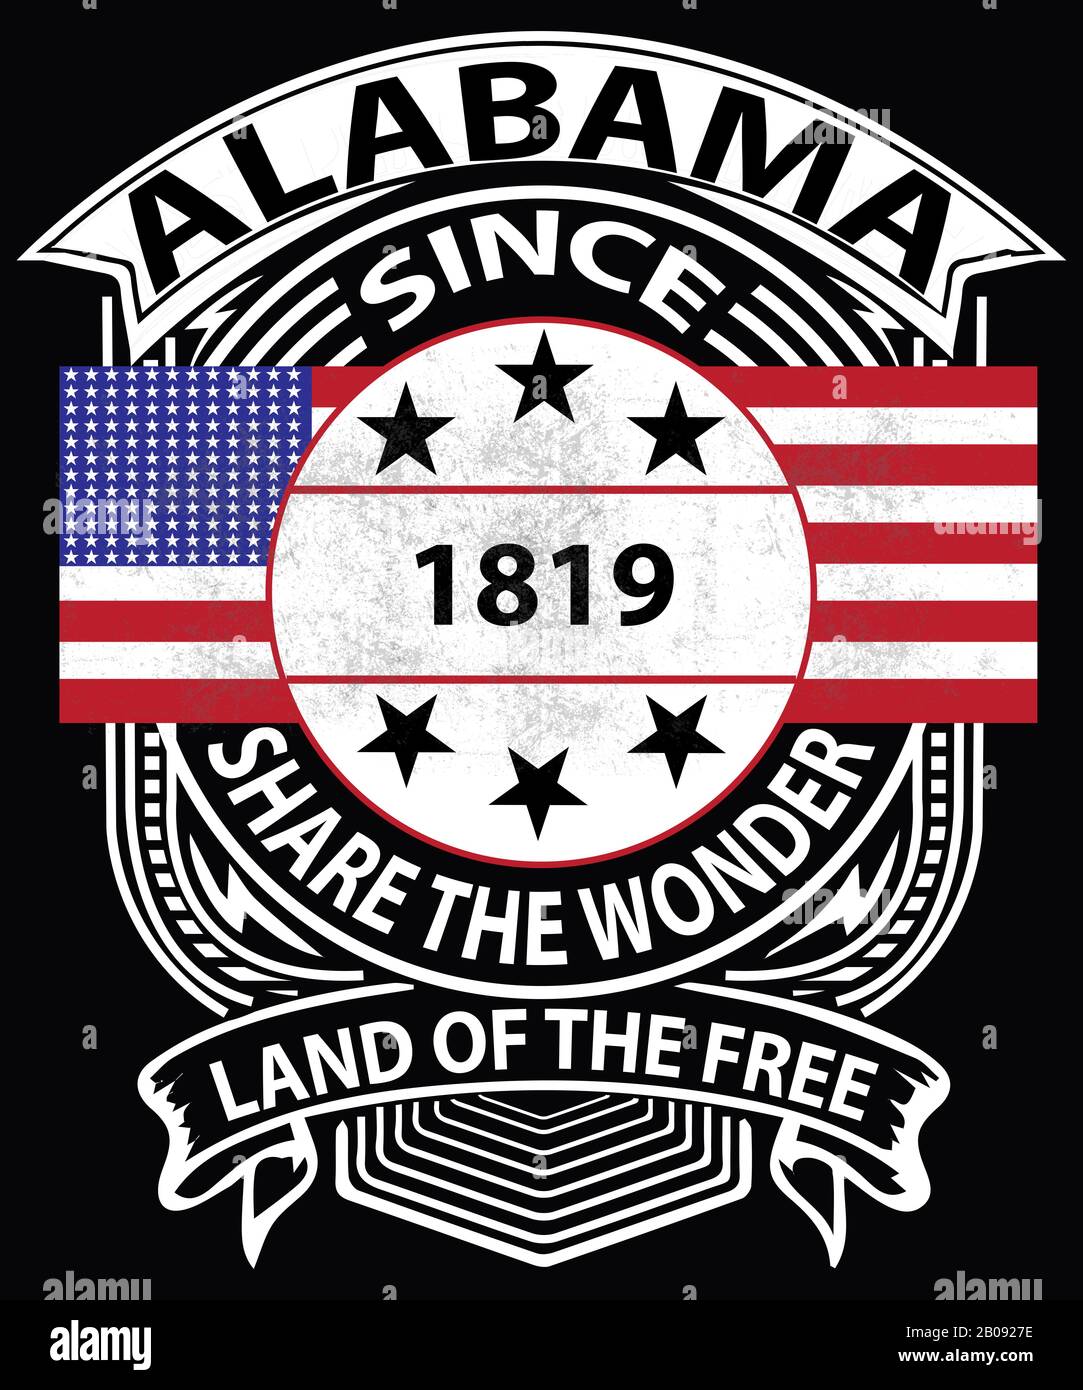 Alabama grafica tipografica vintage con una bandiera americana grunge, dicendo dal 1819, condividere la meraviglia lo slogan stato e la terra del libero. Foto Stock